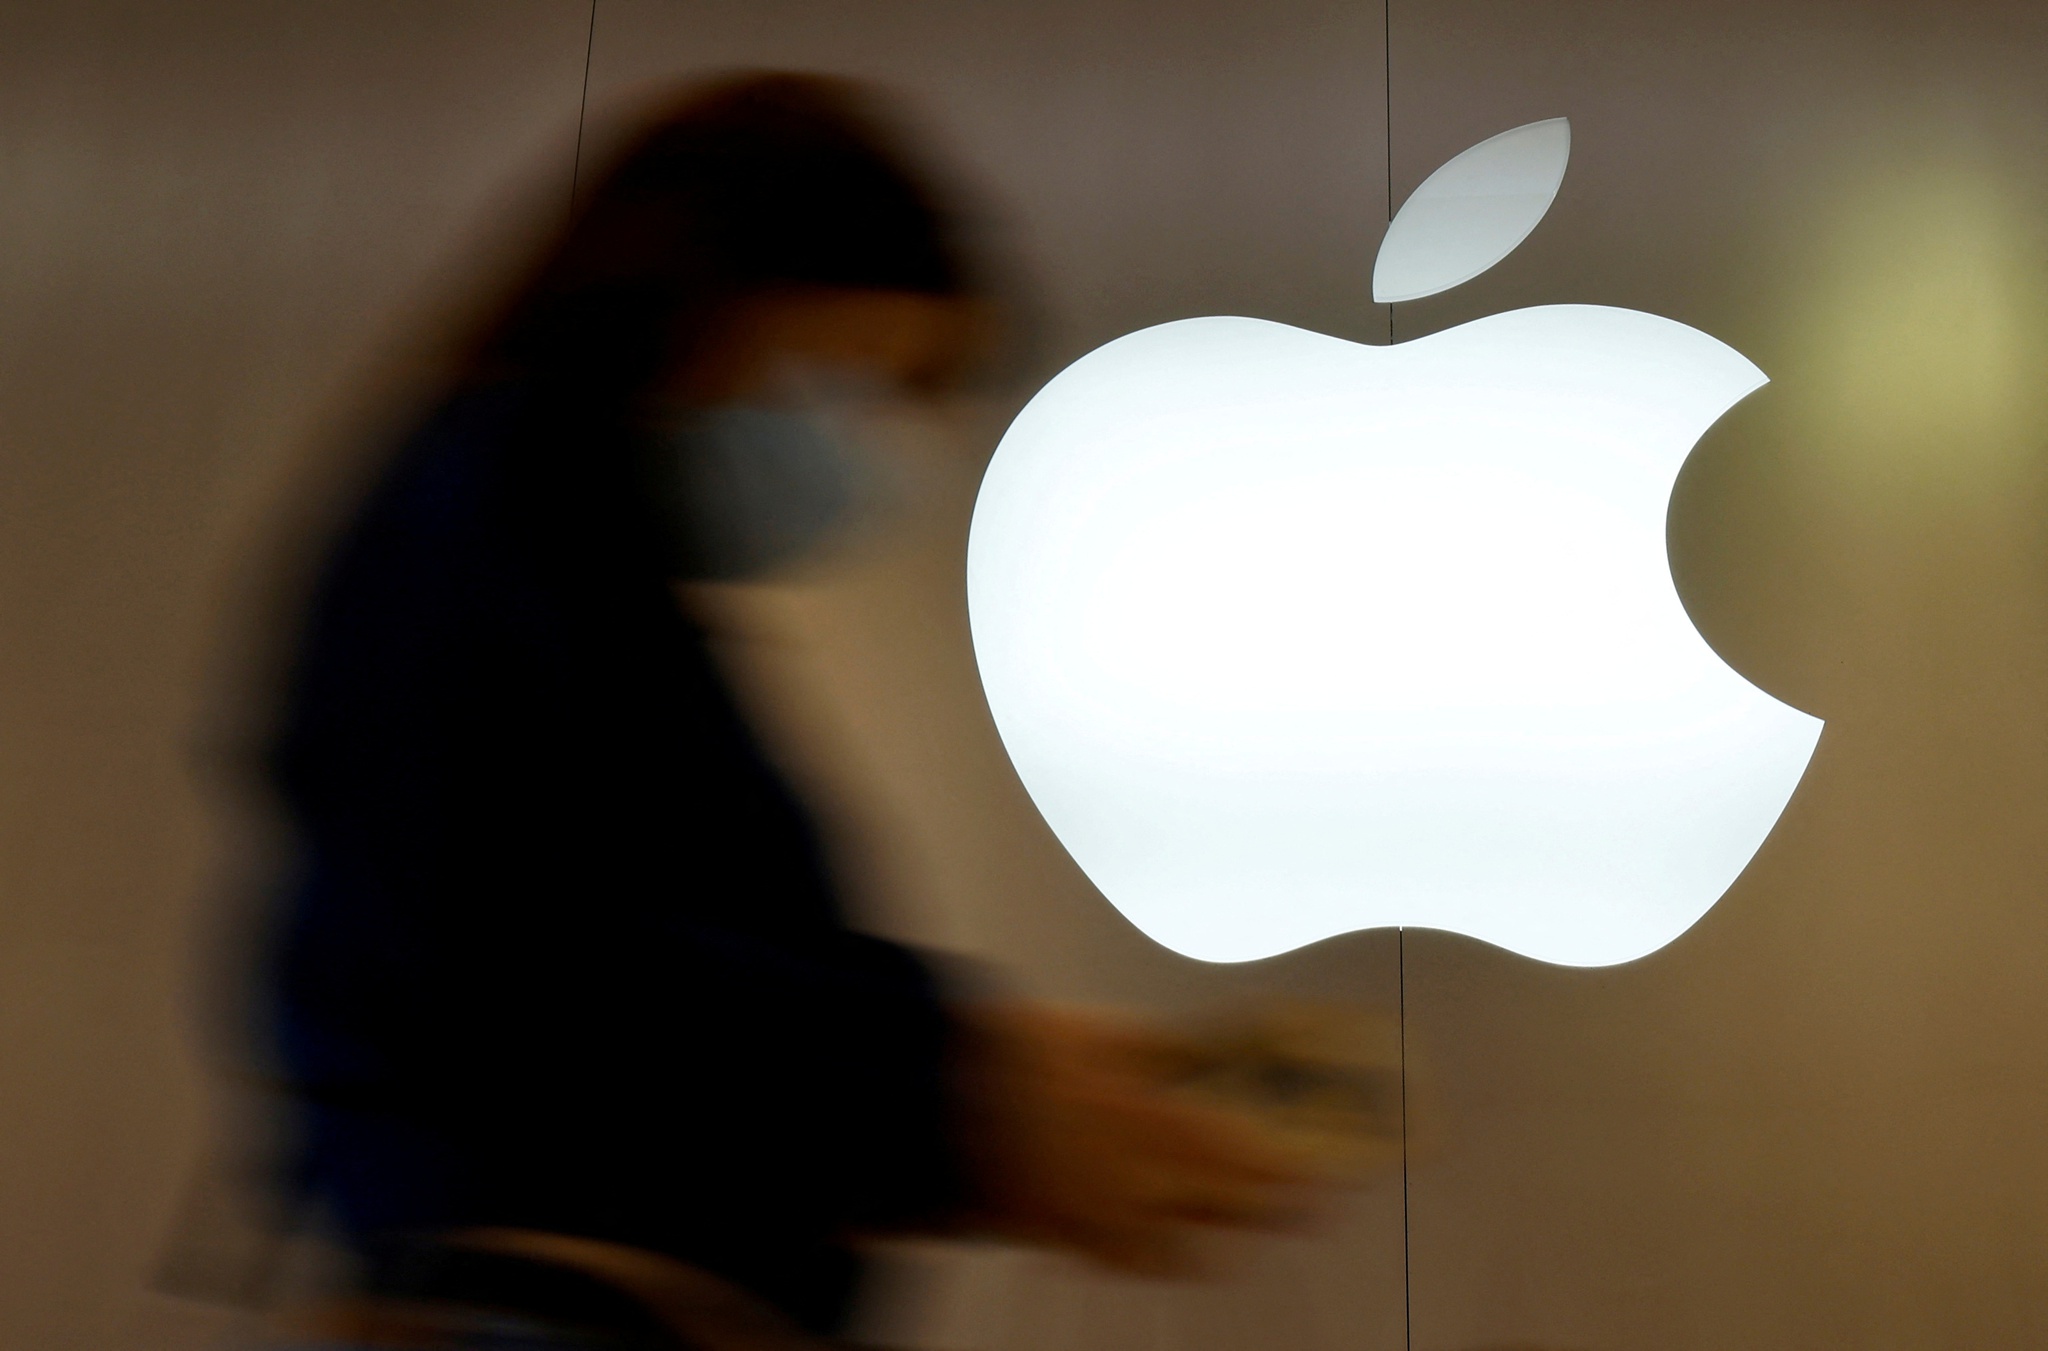 Apple advierte de graves vulnerabilidades de seguridad en iPhones, iPads y Macs  tecnología